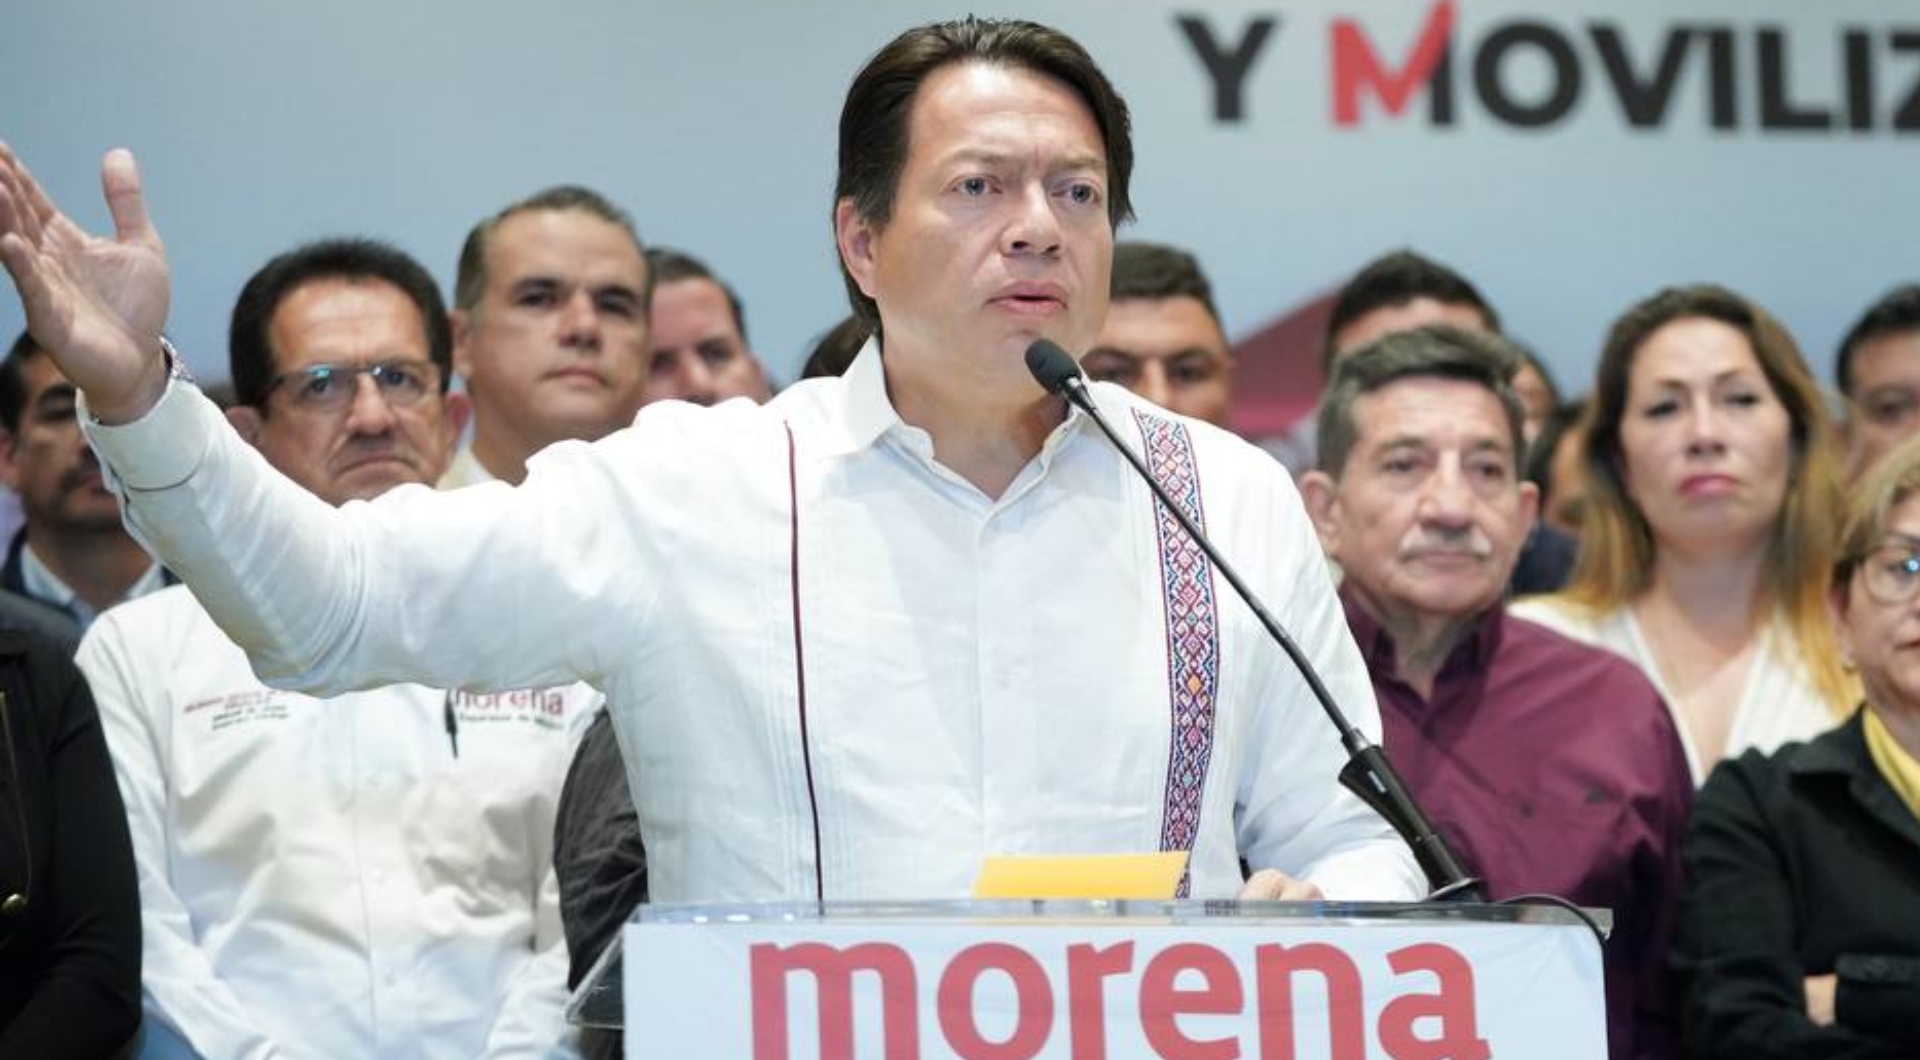 La dura respuesta de Mario Delgado a quienes exigieron su renuncia de Morena: “División es traición”